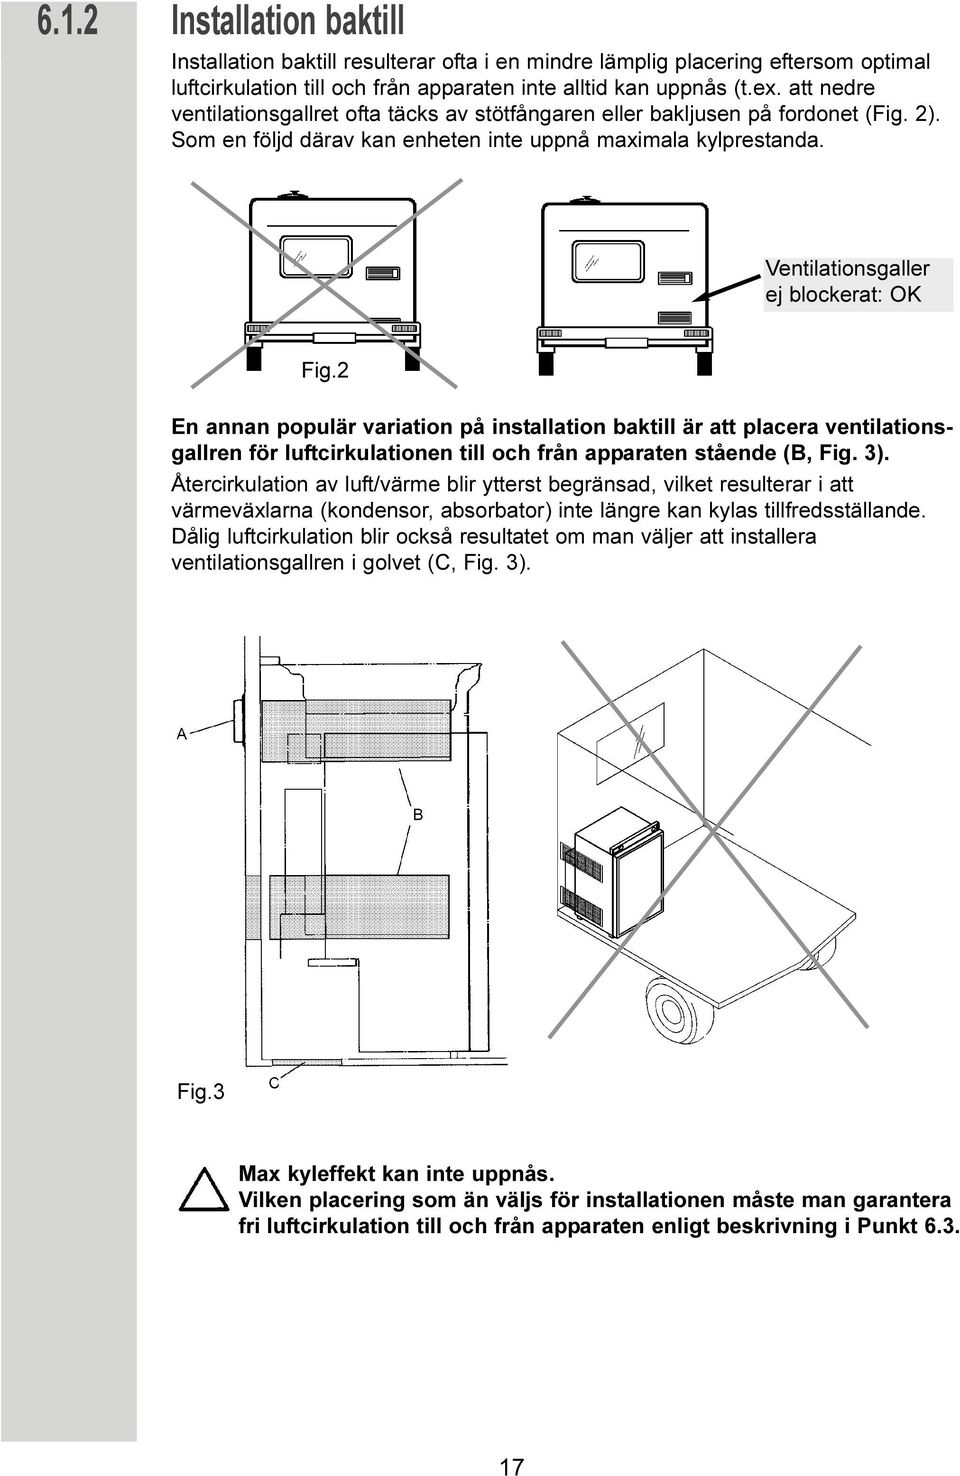 2 En annan populär variation på installation baktill är att placera ventilationsgallren för luftcirkulationen till och från apparaten stående (B, Fig. 3).